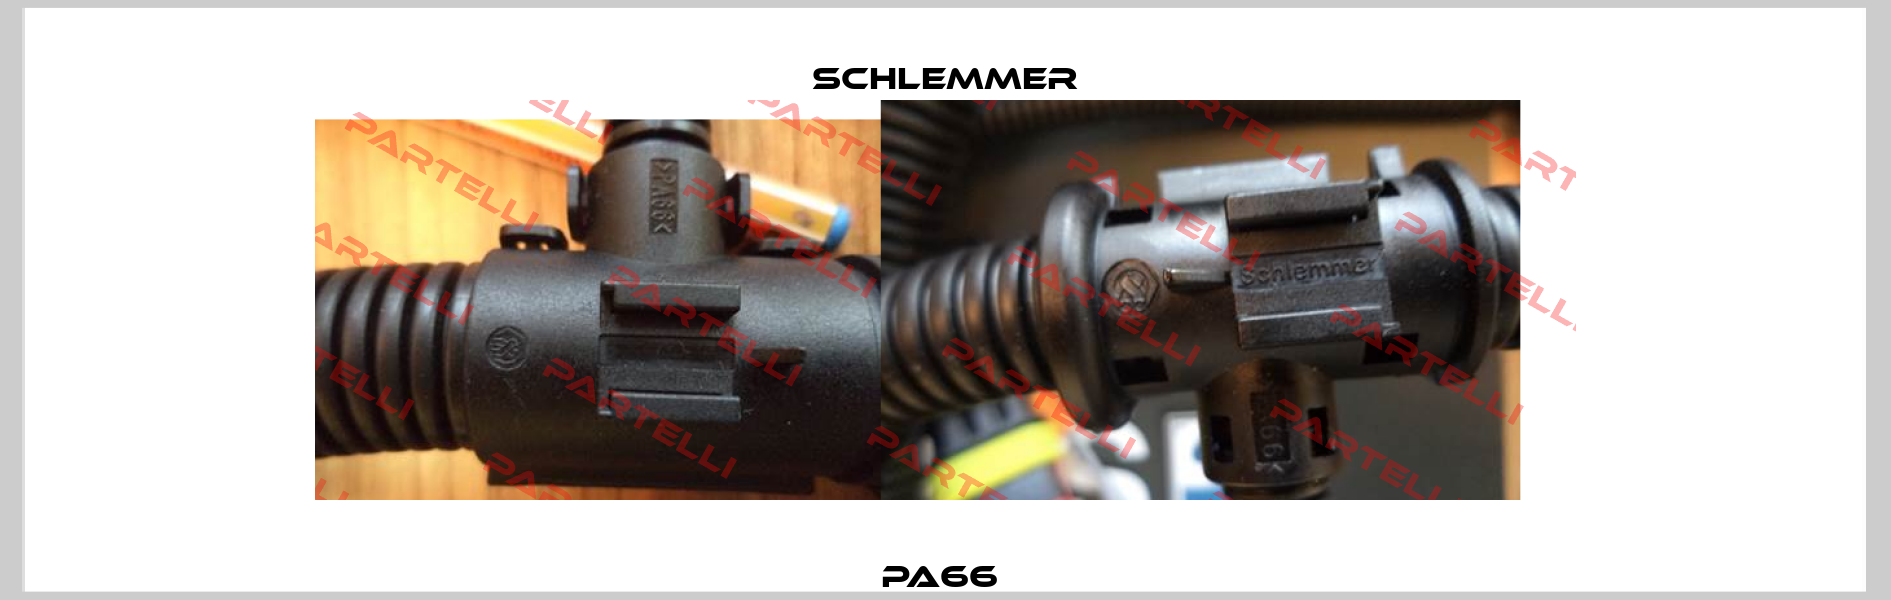 PA66  Schlemmer